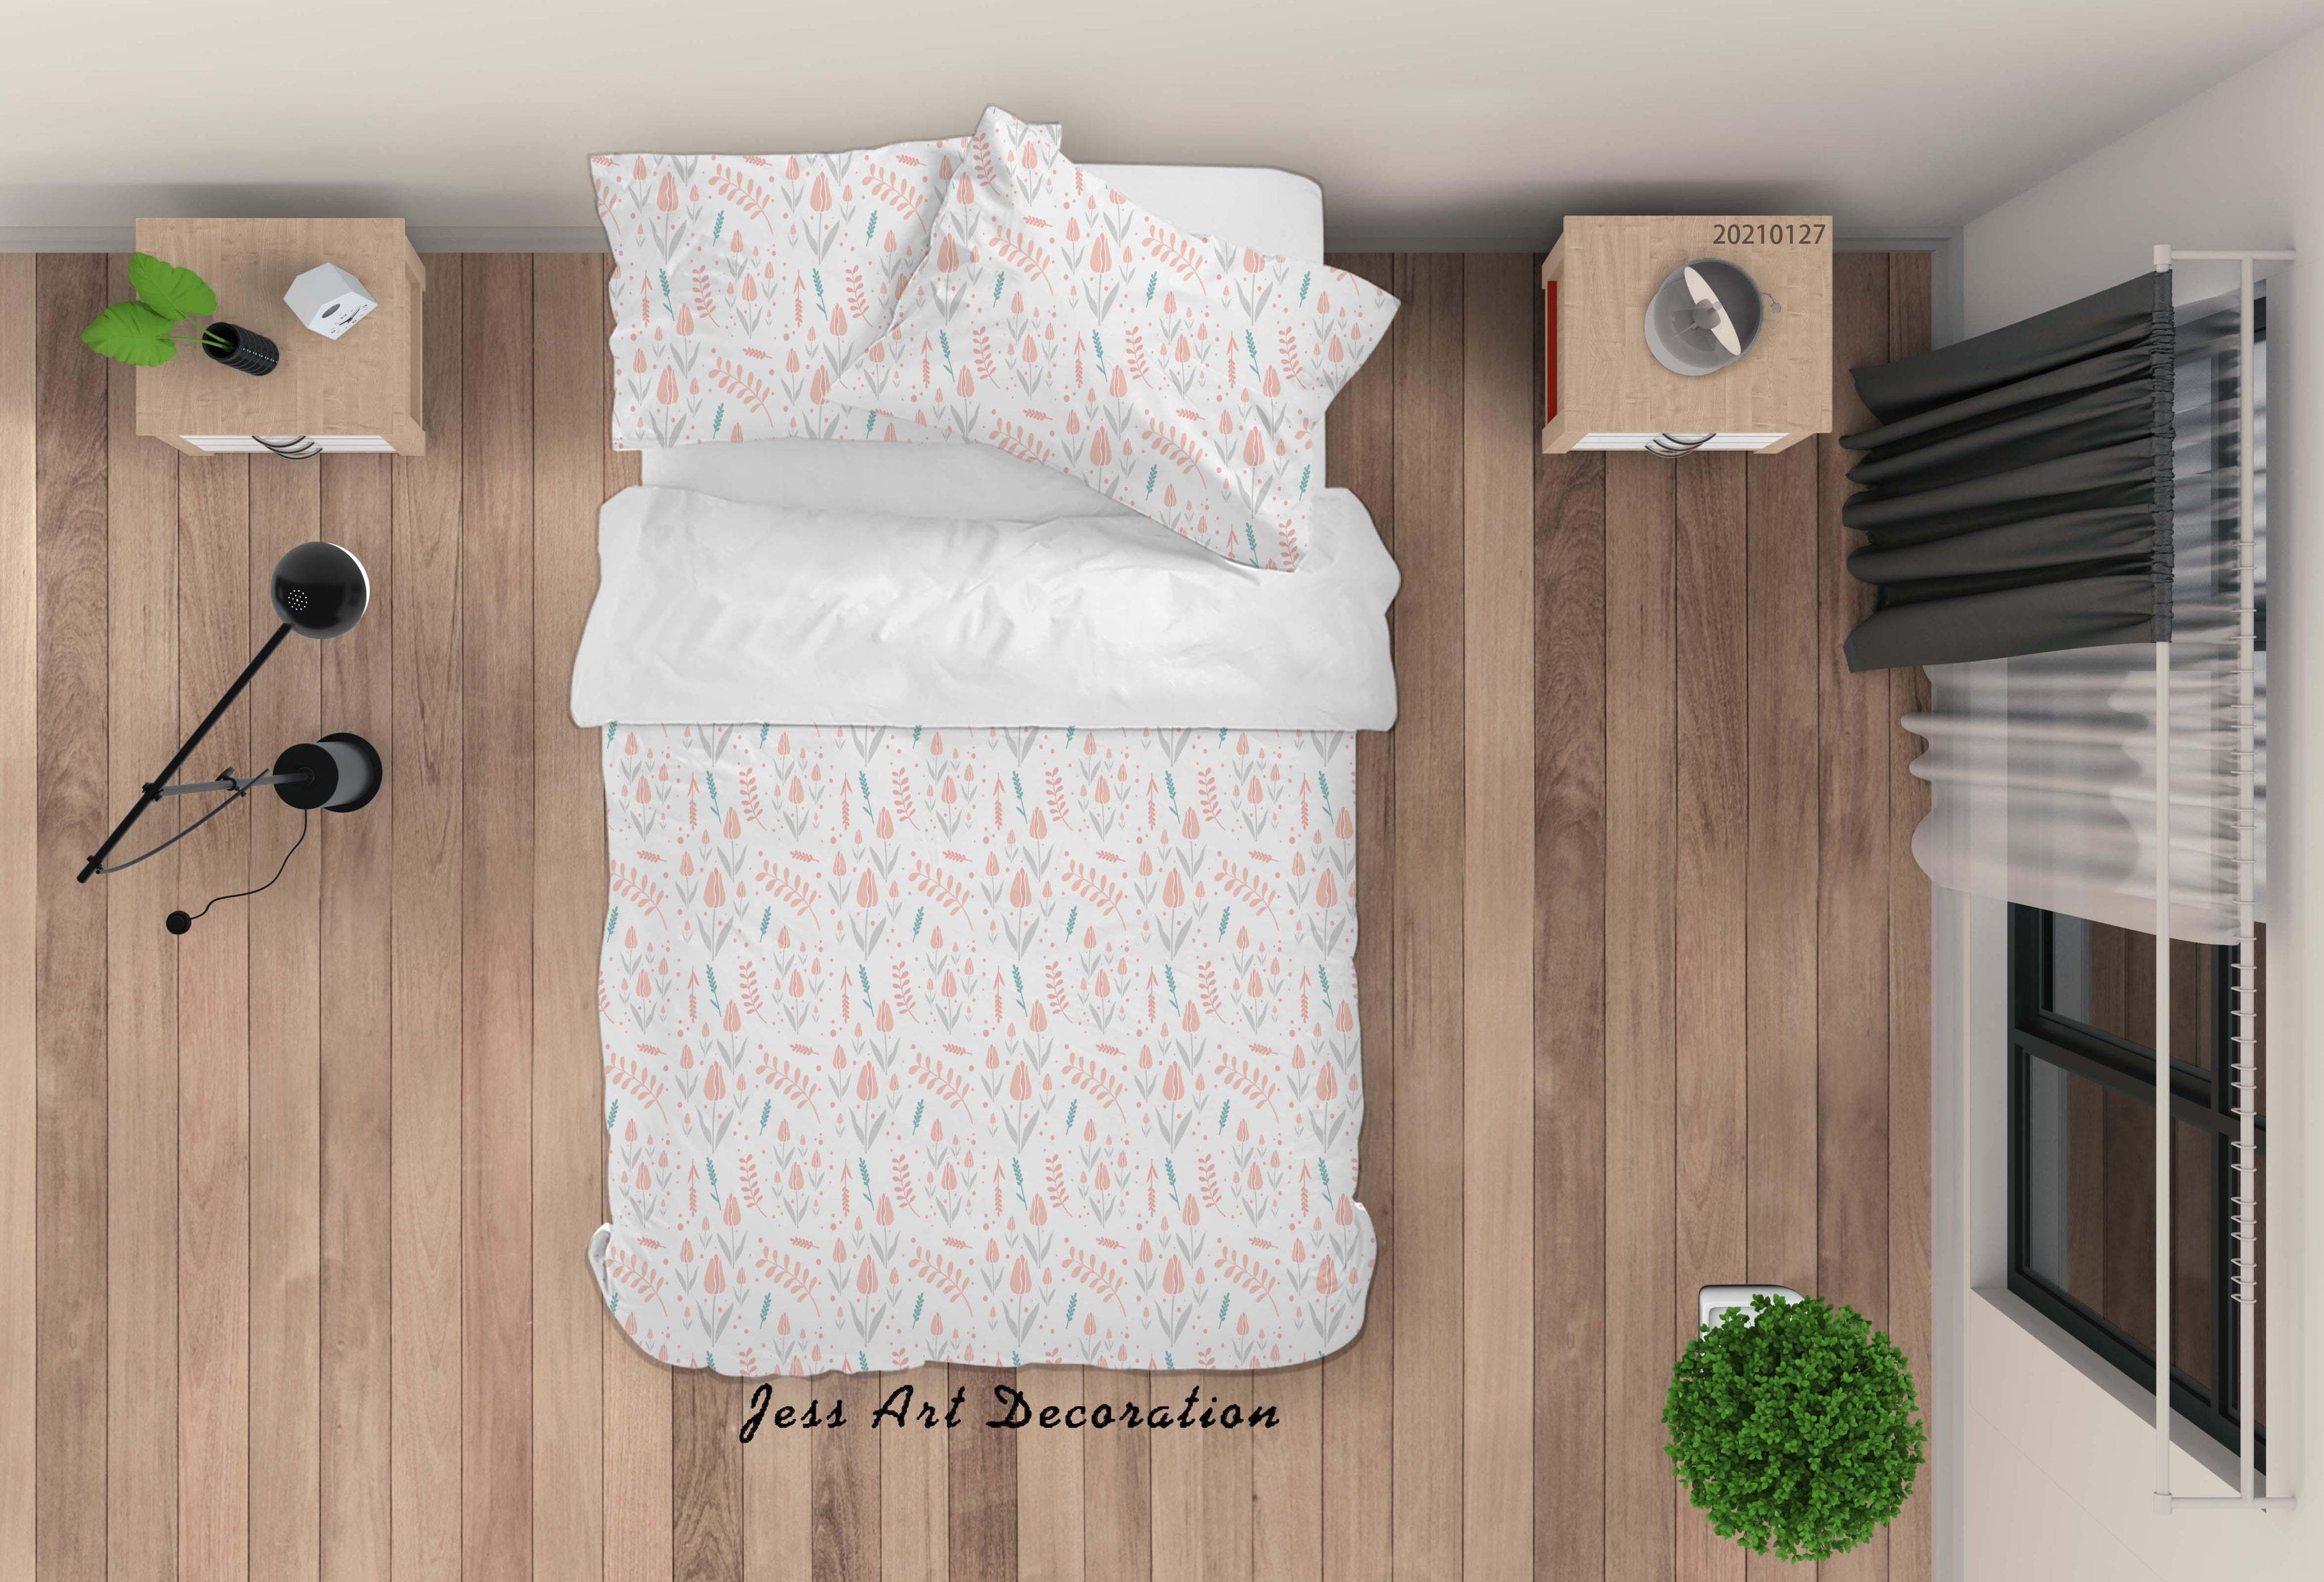 3D Watercolor Pink Floral Pattern Quilt Cover Set Bedding Set Duvet Cover Pillowcases 190- Jess Art Decoration